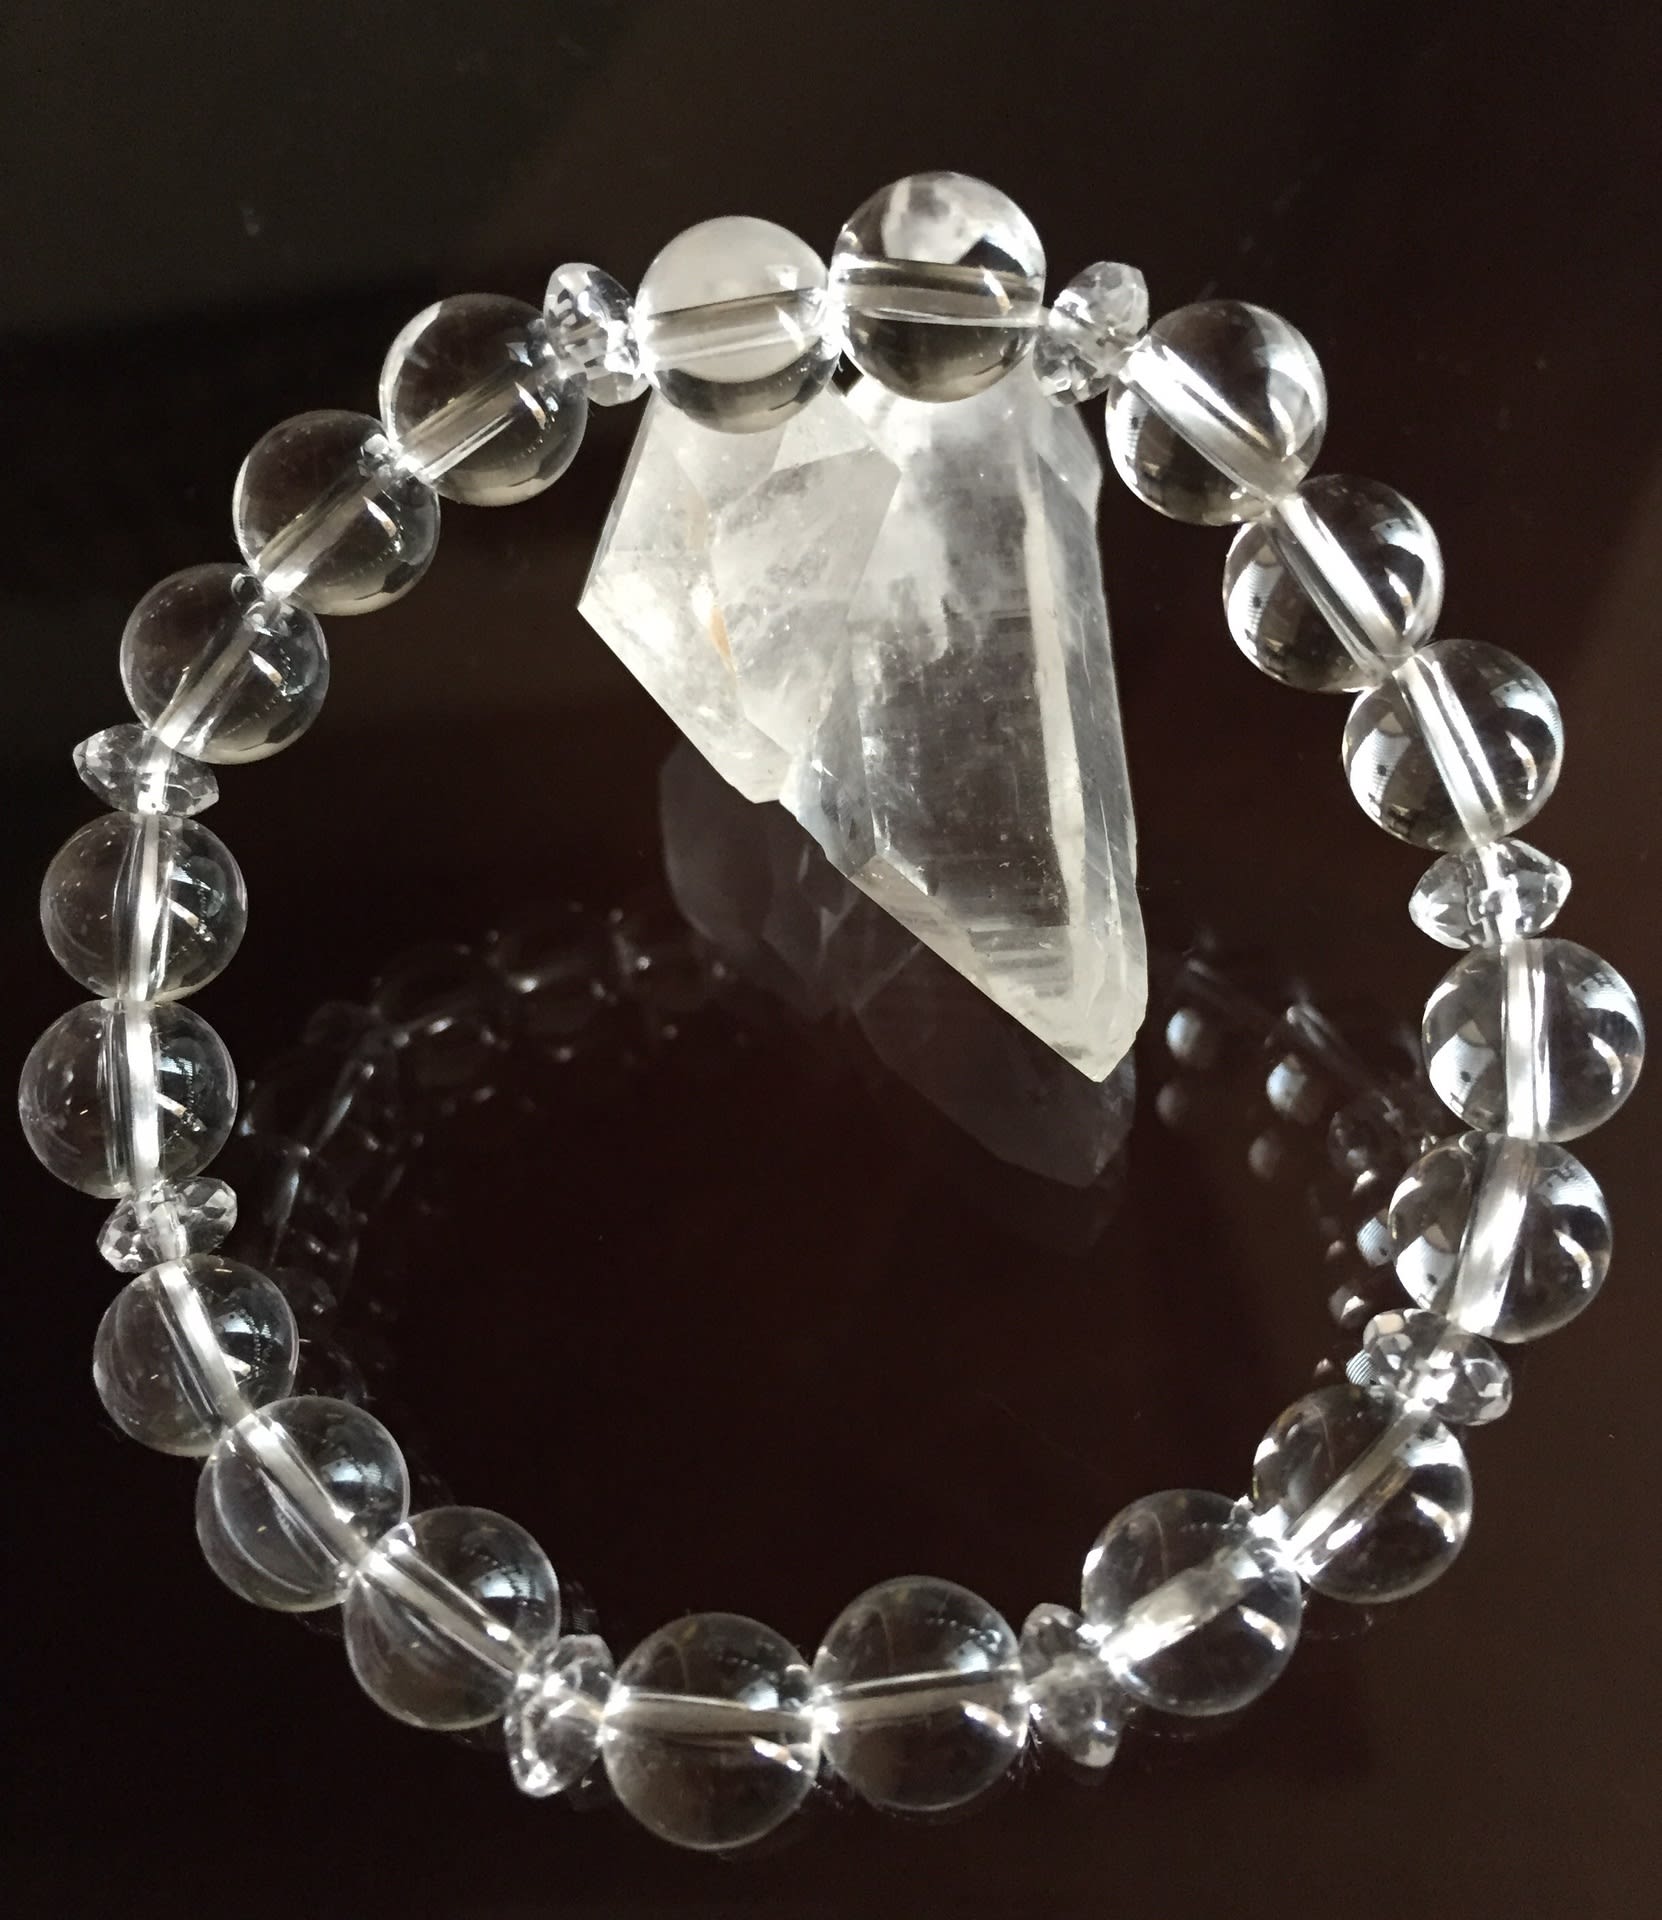 ヒマラヤ水晶とブラジル水晶 - 安珠のブログ